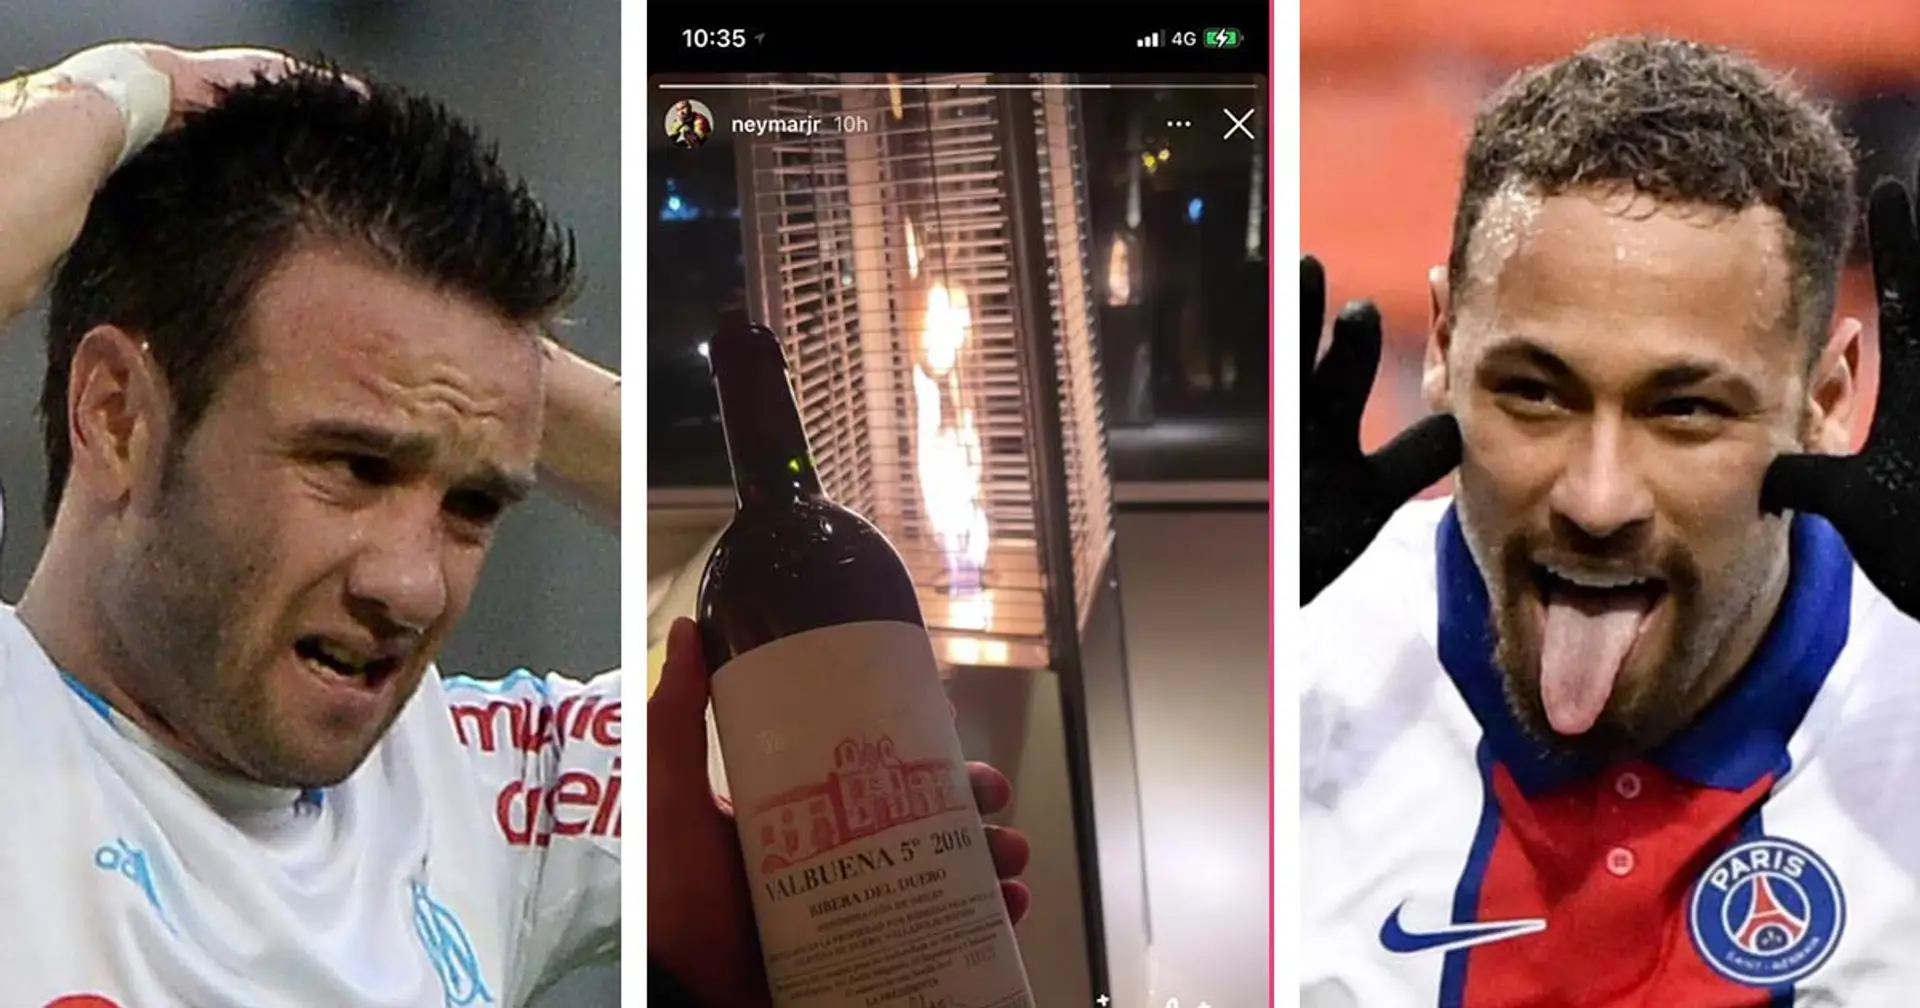 Neymar aperçu avec une bouteille de "Valbuena", les fans marseillais répondent au troll du supporter parisien